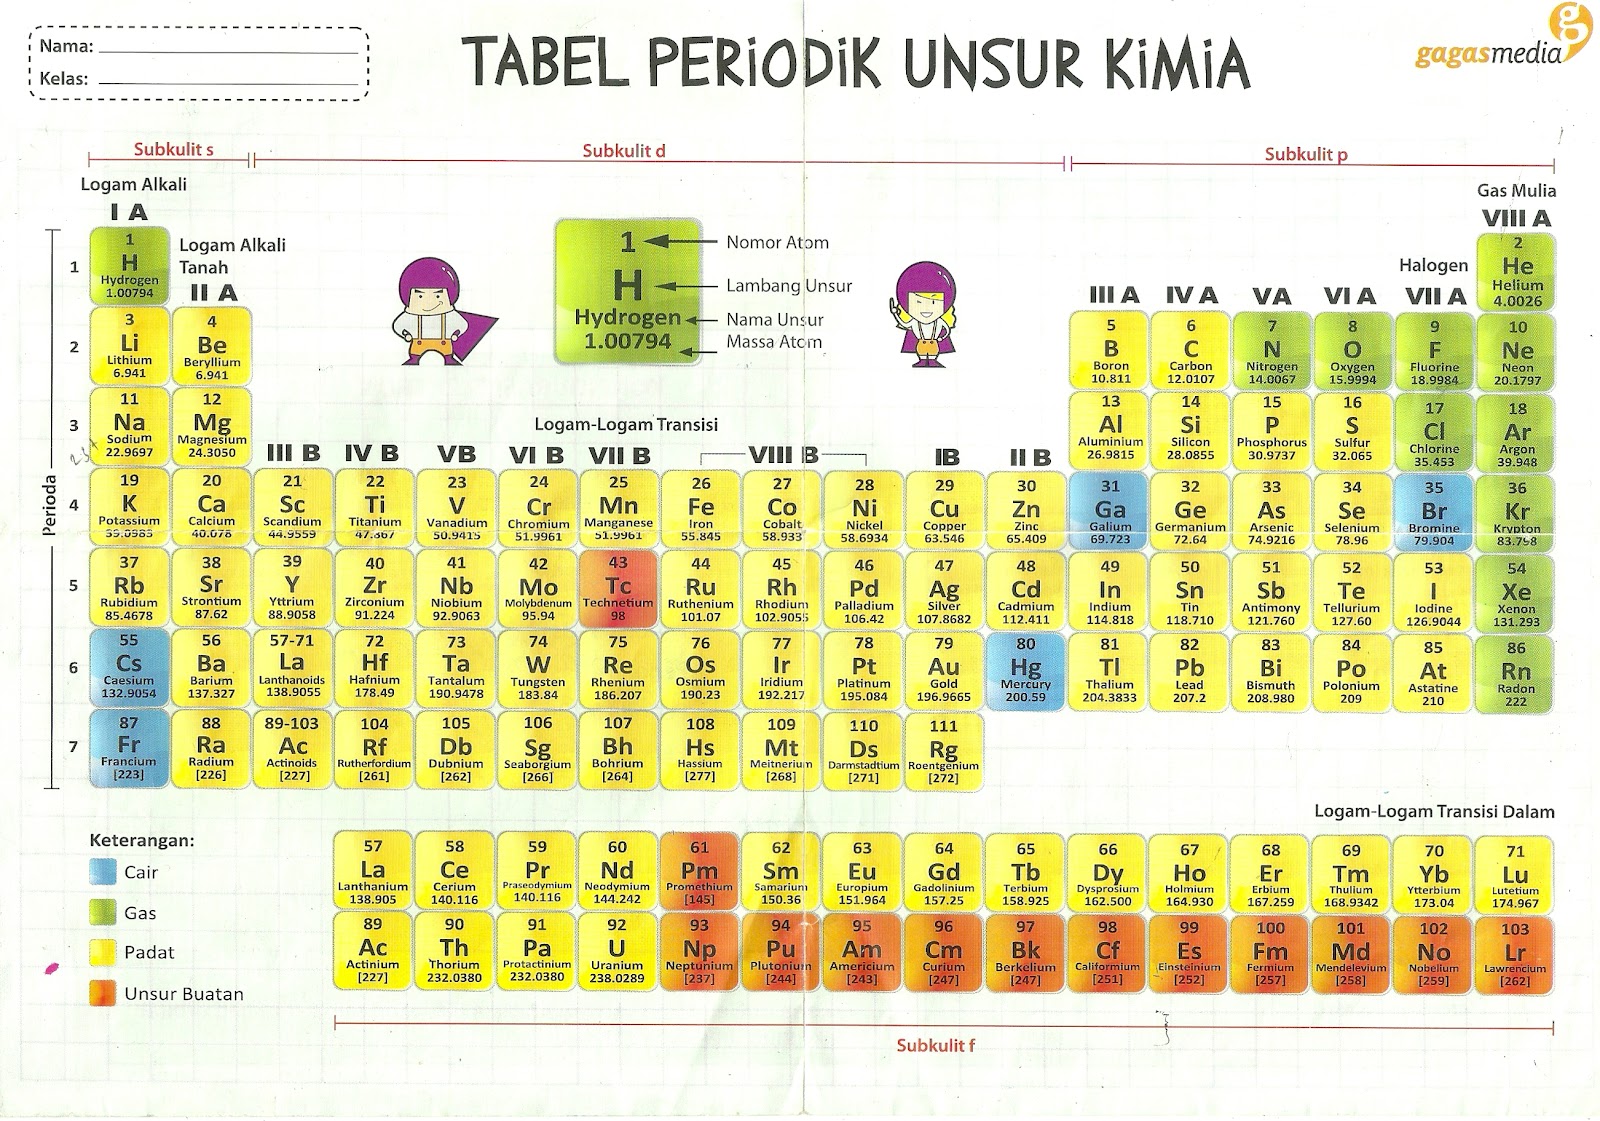 Tabel Periodik Unsur Kimia Ukuran Besar Images - How To 